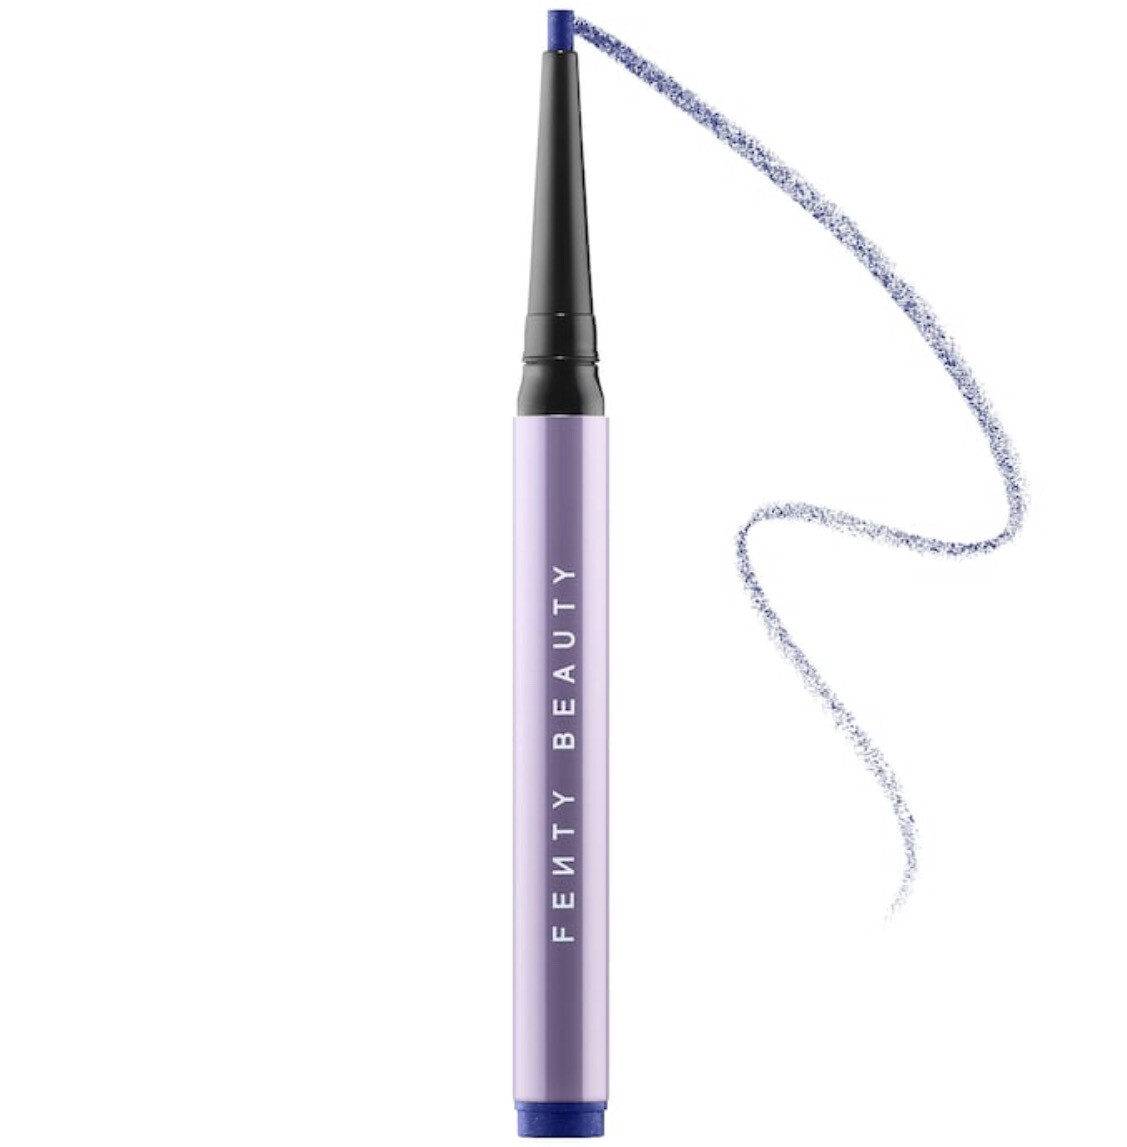 Fenty Beauty - Flypencil Longwear Pencil Eyeliner | Sea About It - cobalt blue matte